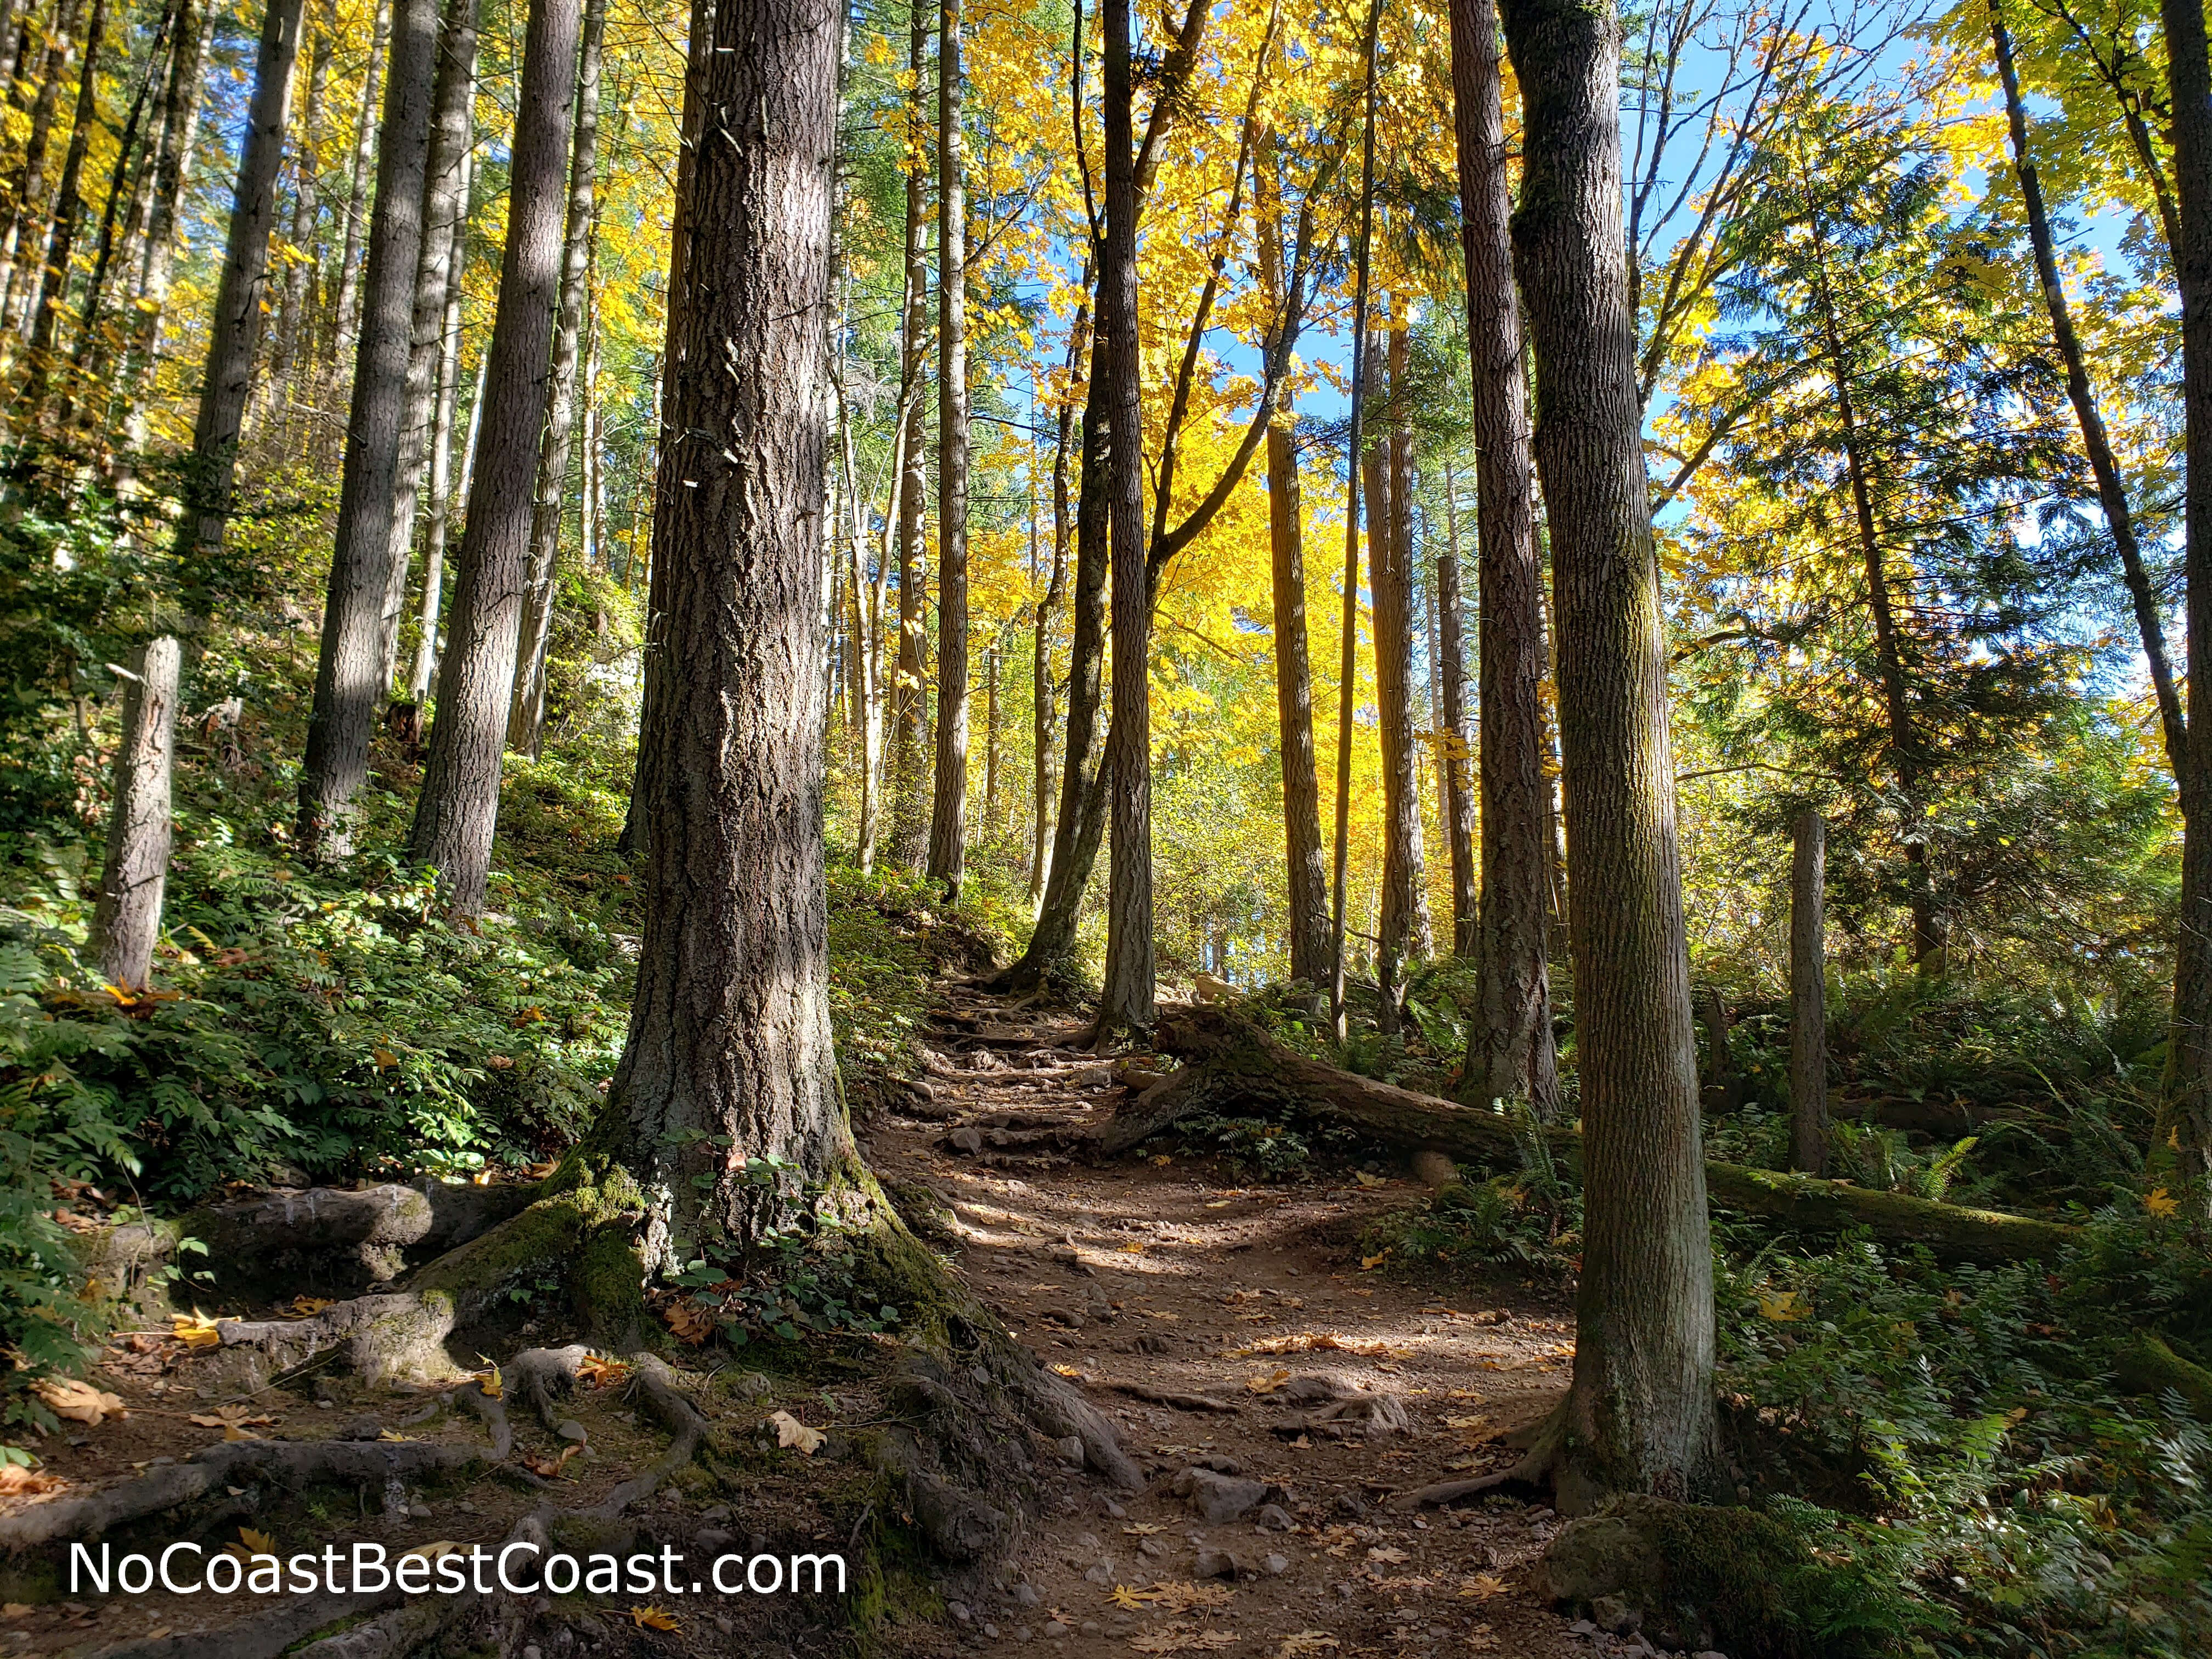 Fall foliage along the uphill trail